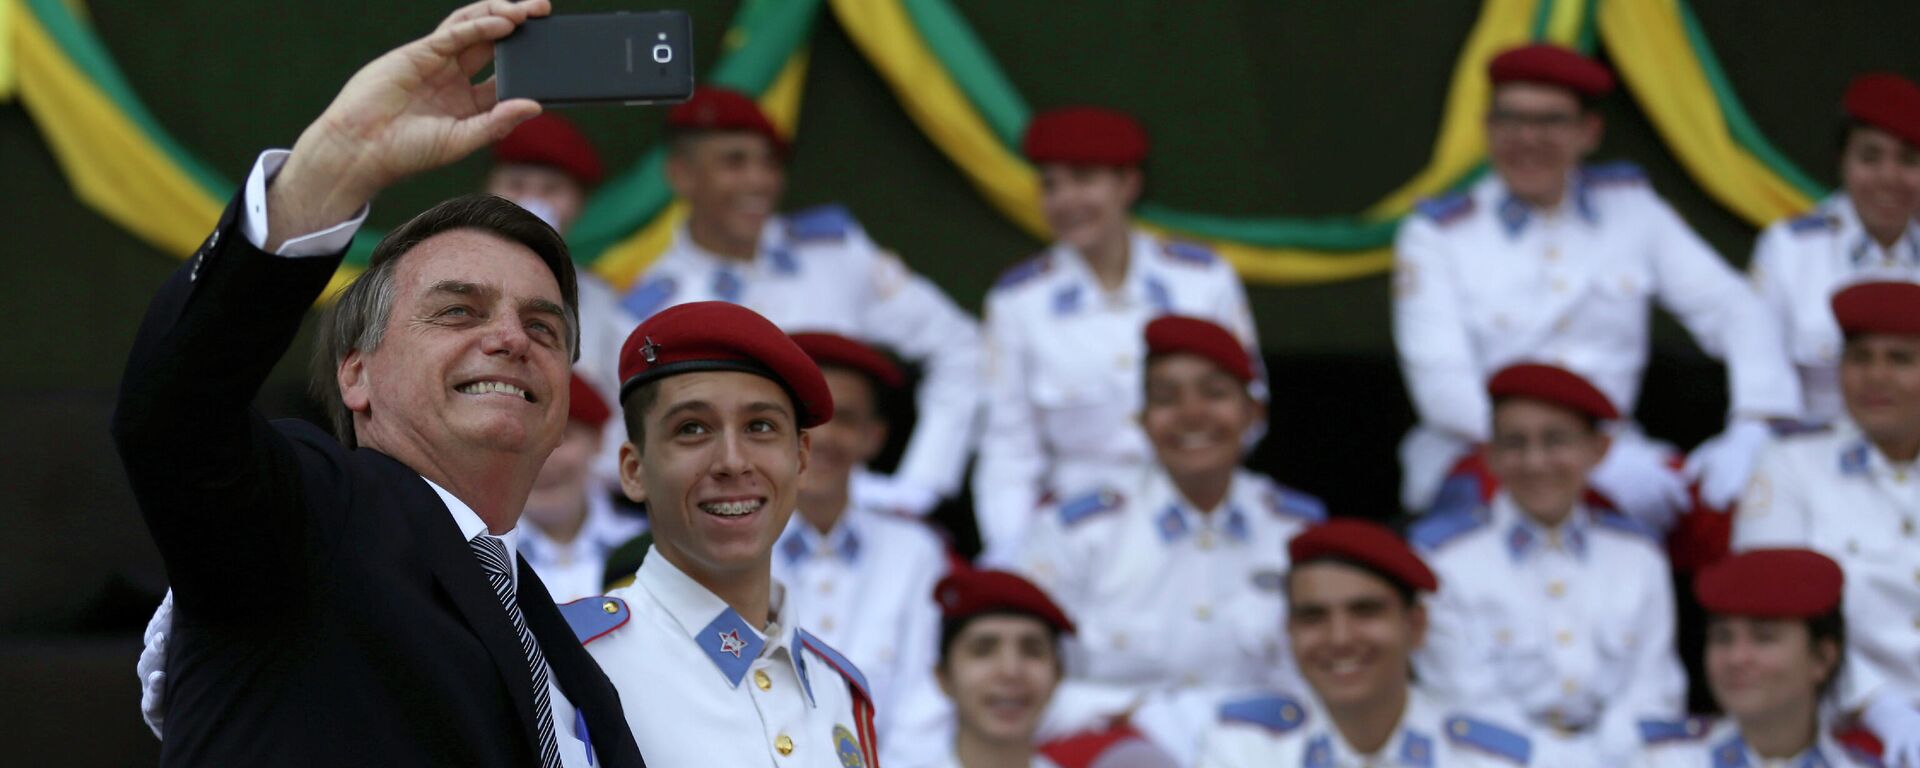 El presidente de Brasil, Jair Bolsonaro, junto a estudiantes de la Escuela Militar en 2019 - Sputnik Mundo, 1920, 01.04.2021